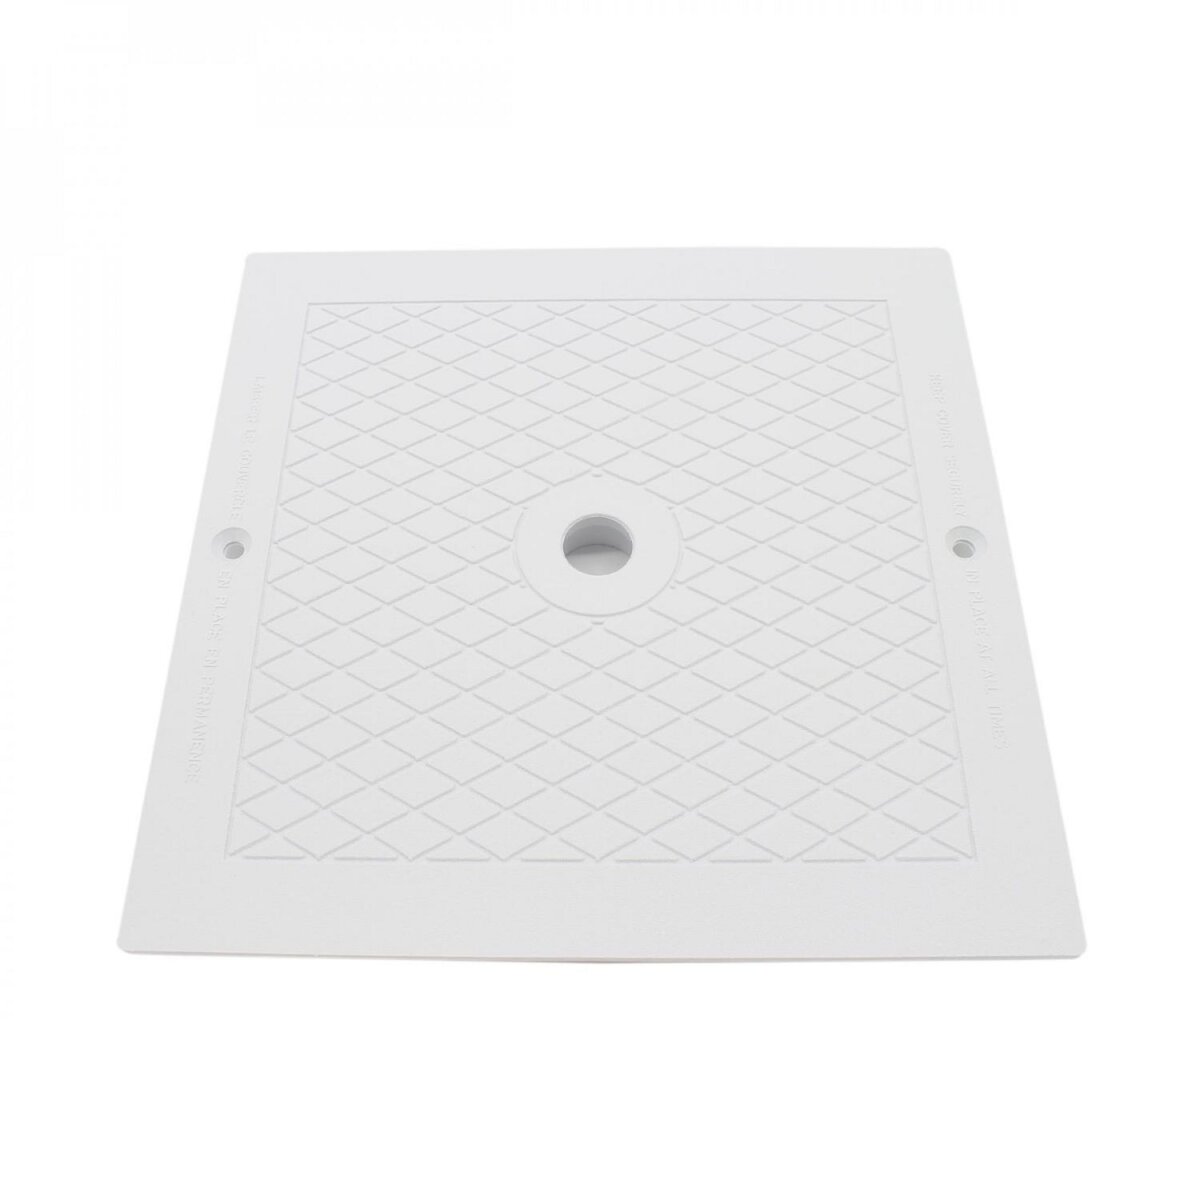 Hayward Couvercle carré pour skimmer de piscine - 25.5 x 25.5 cm - Blanc - SPX1082E